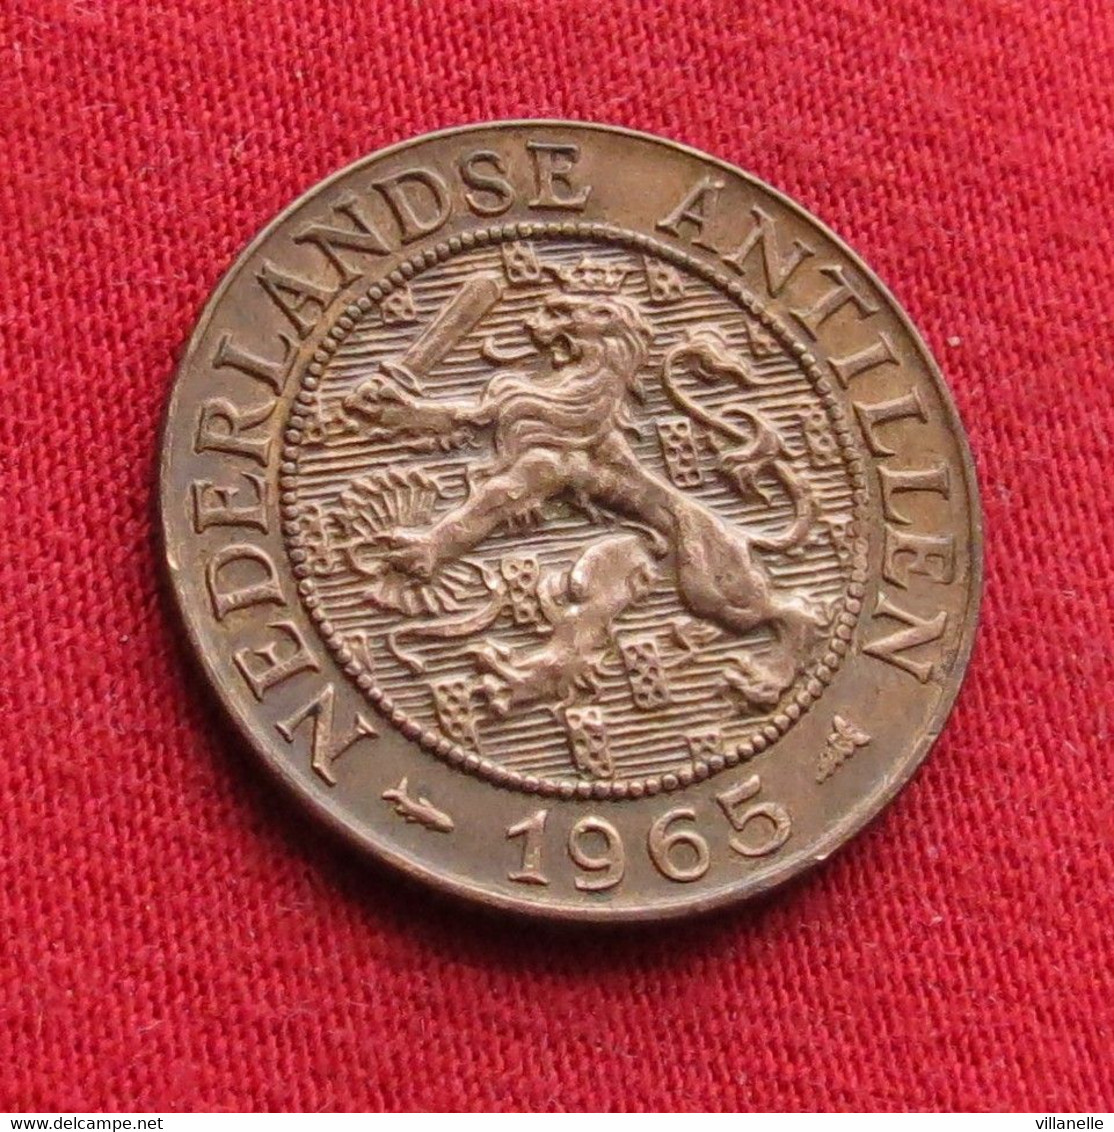 Netherlands Antilles 2 1/2 Cent 1965 KM# 5 *VT Antillen Antilhas Antille Antillas Cents - Niederländische Antillen